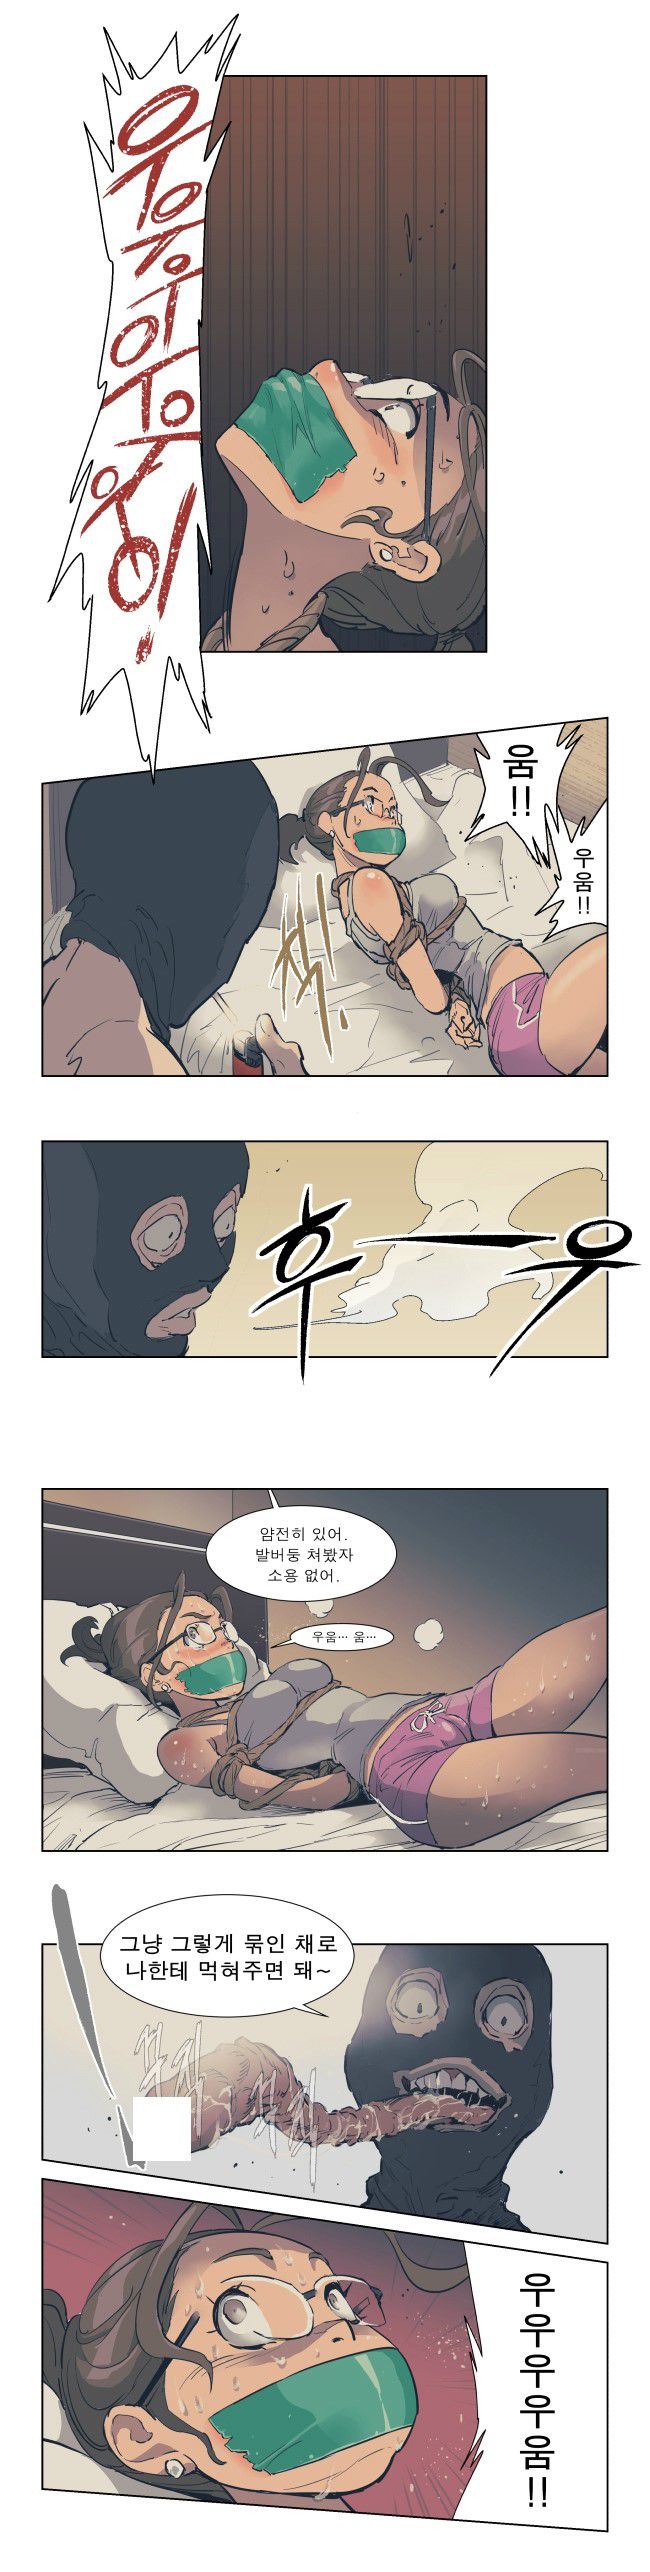 korean comic gagged 2